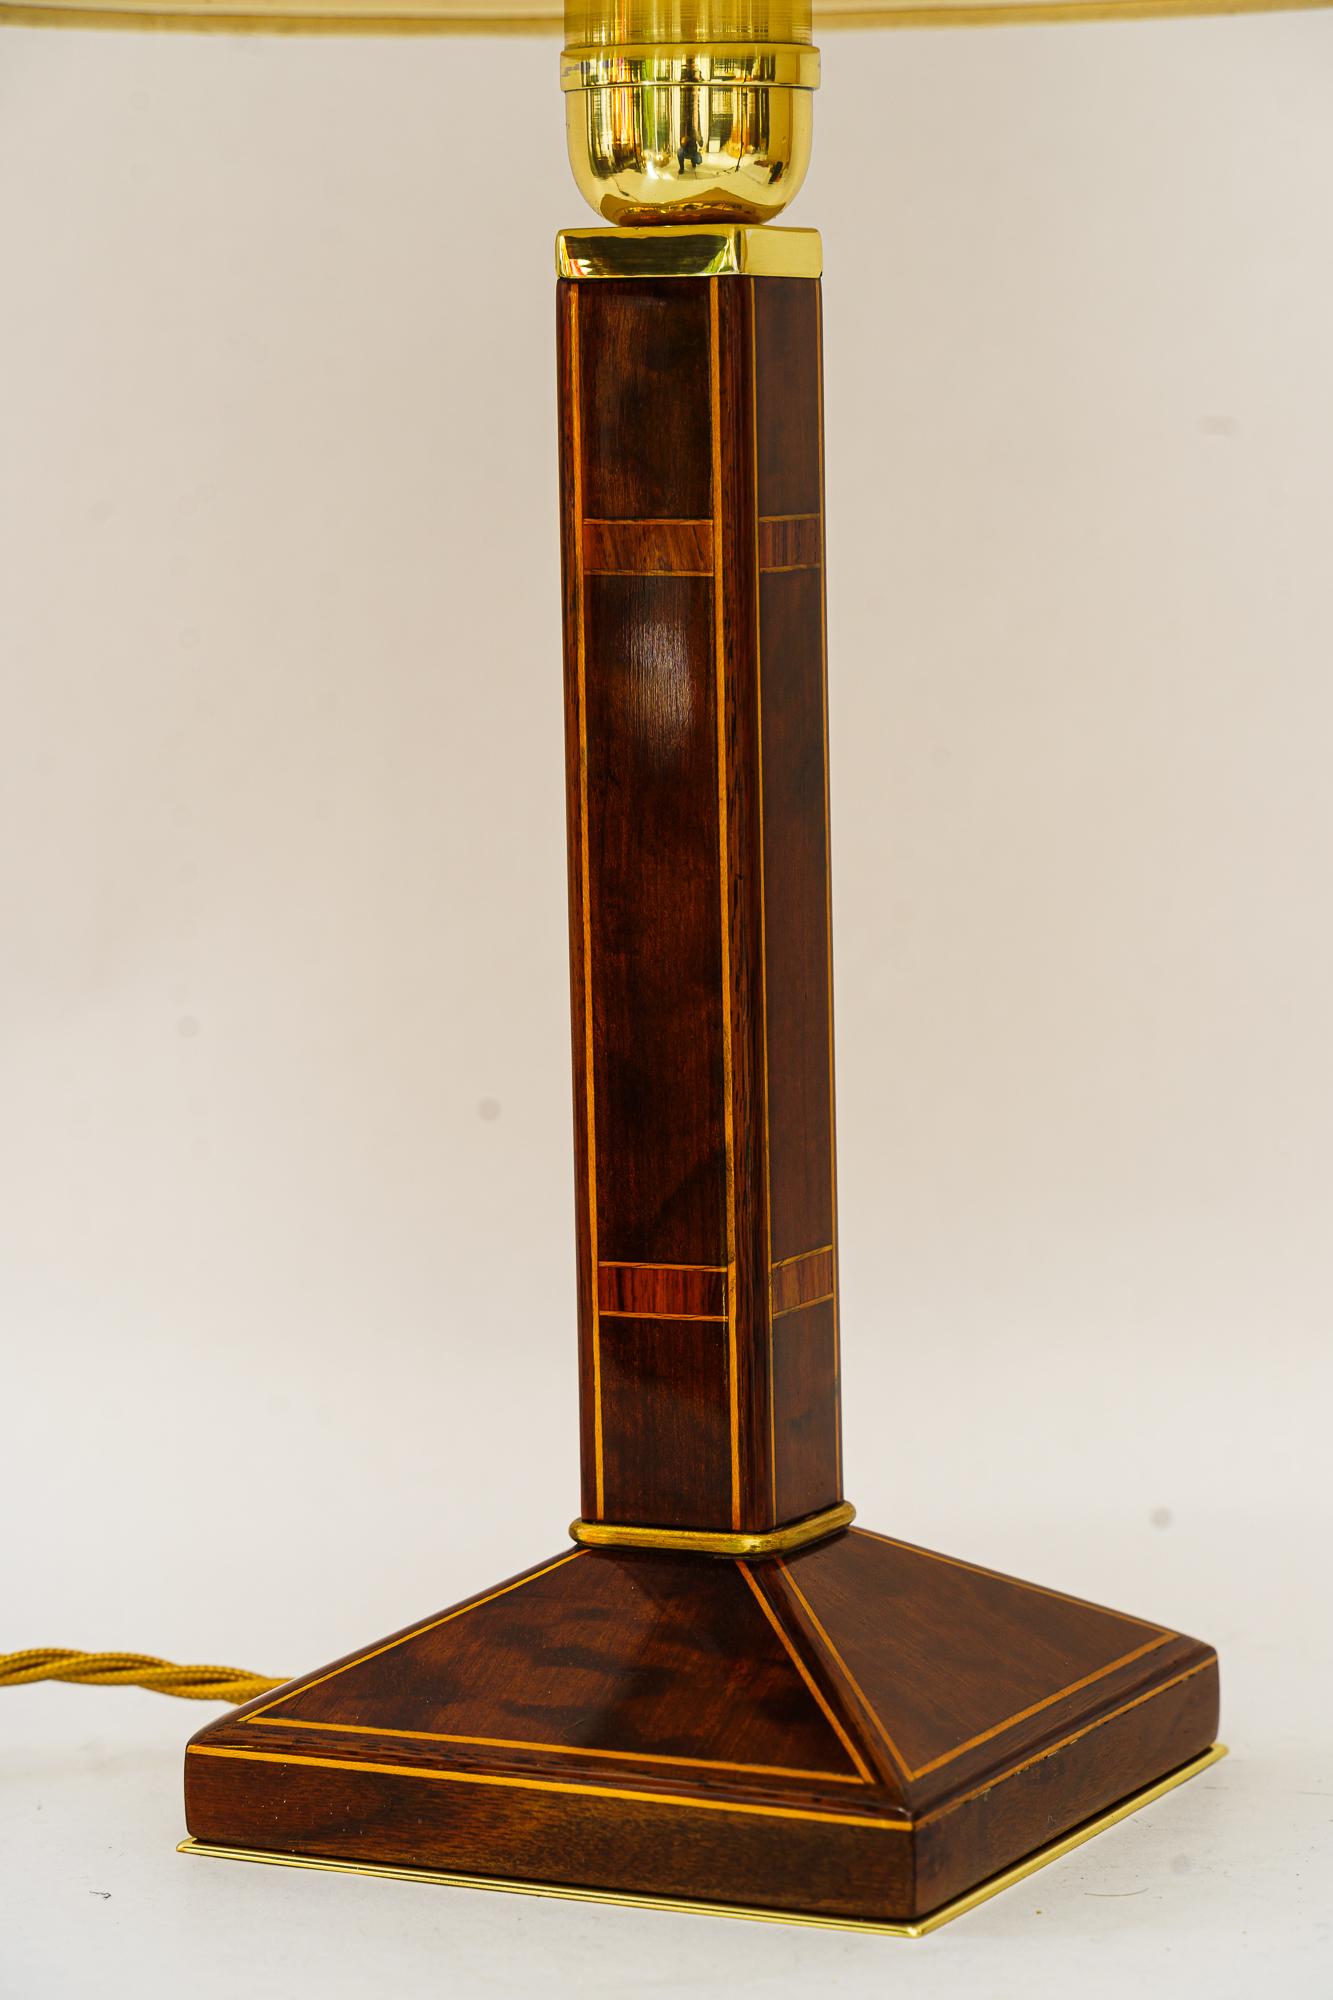 Bigli Art deco Tischlampe Holz mit Intarsien Wien um 1920er Jahre
Poliert und emailliert
Der Stoffschirm wird ersetzt ( neu )